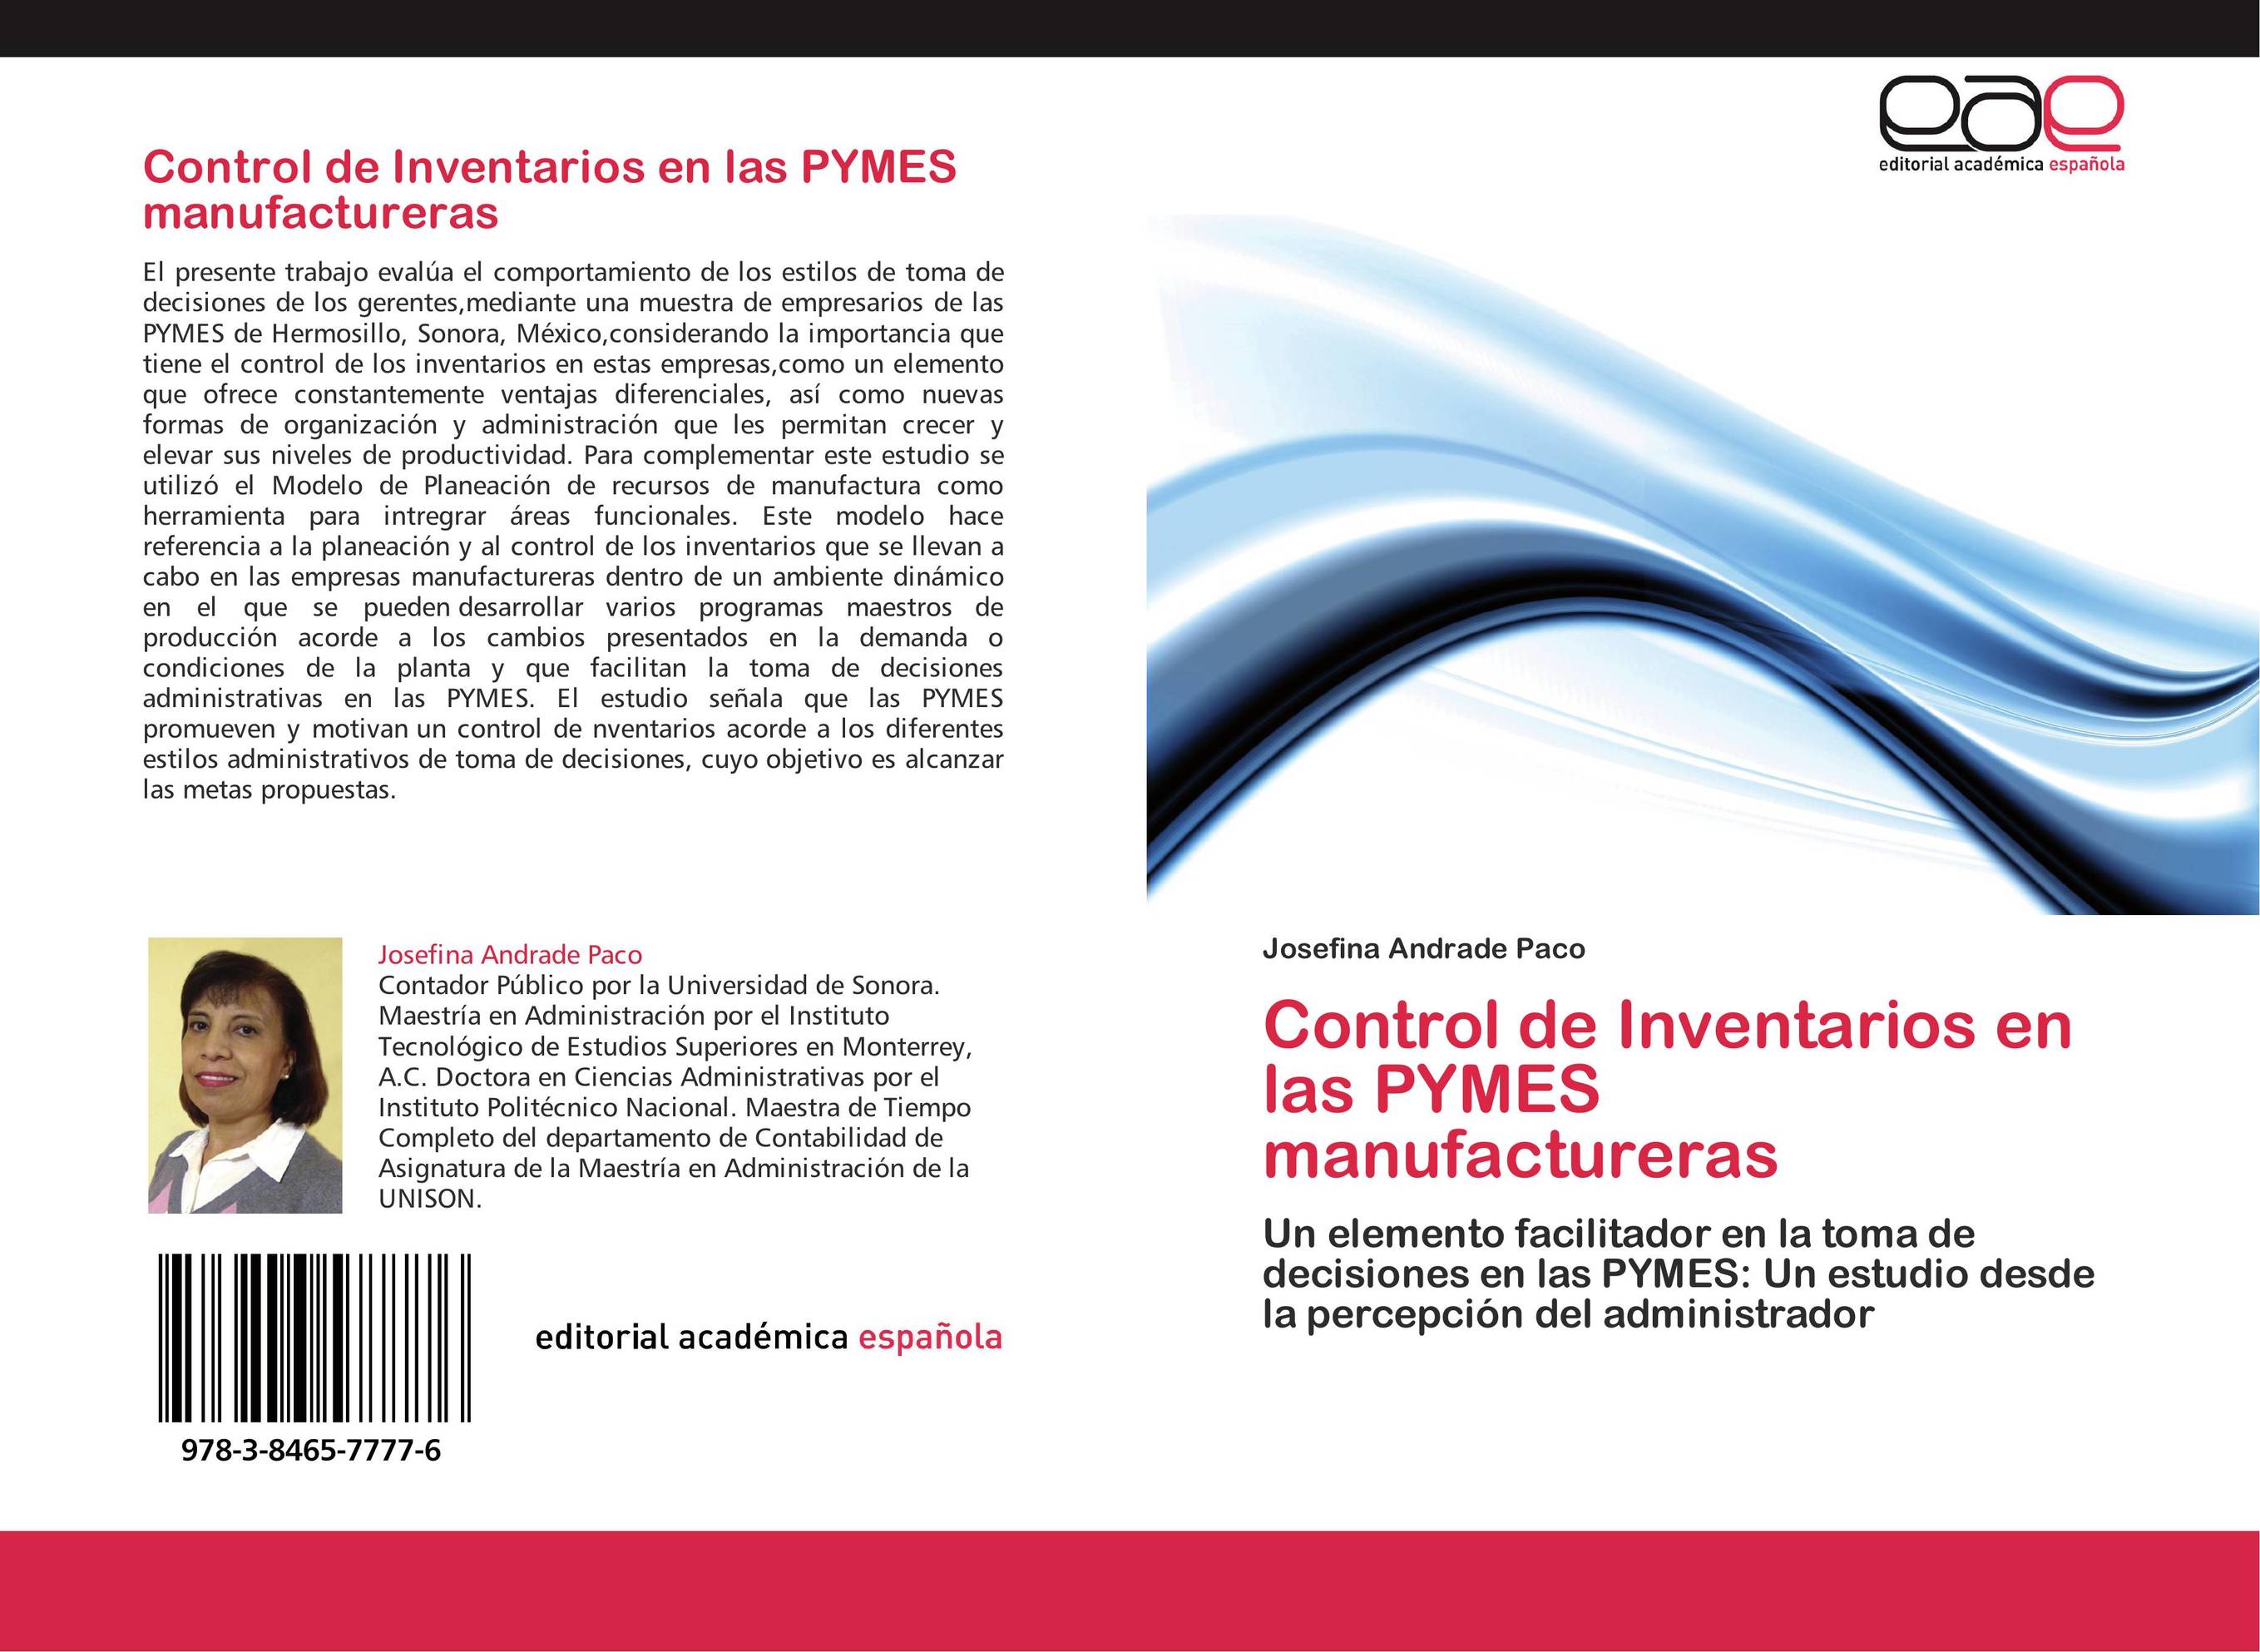 Control de Inventarios en las PYMES manufactureras